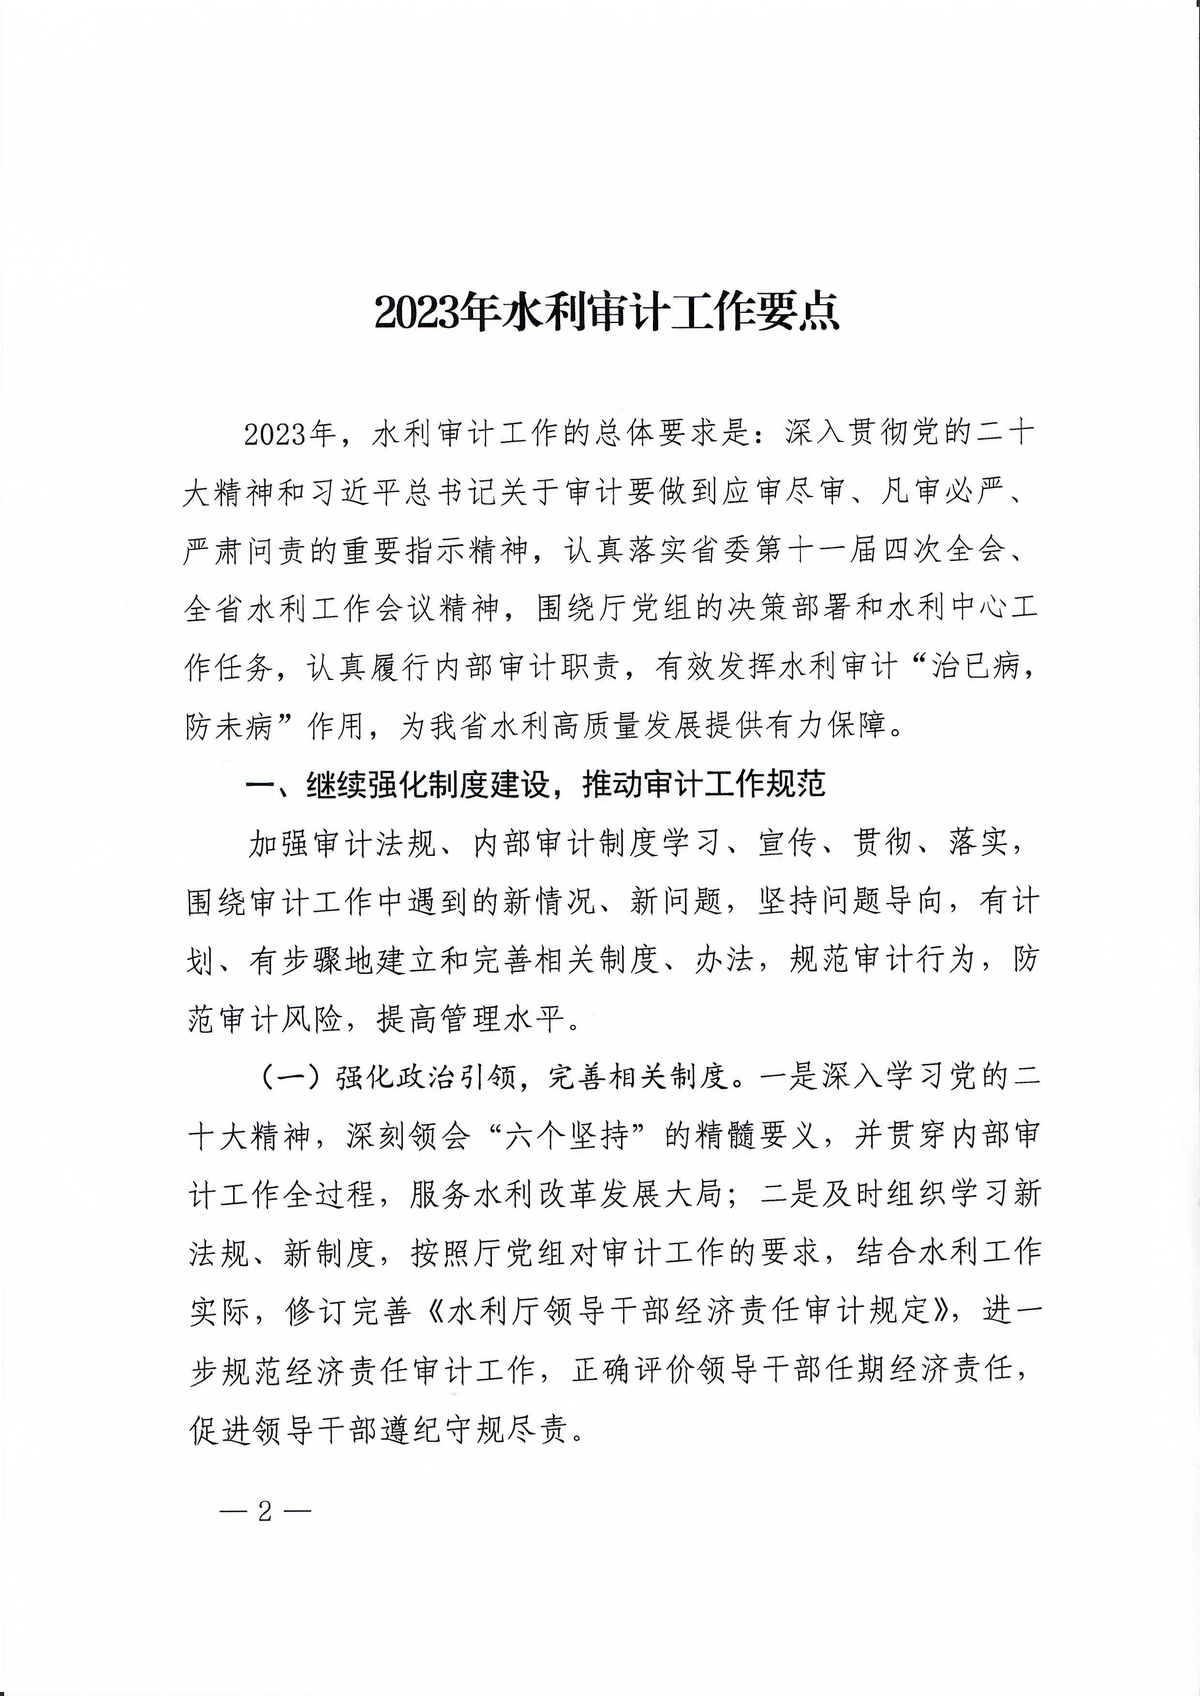 河南省水利厅办公室关于印发2023年水利审计工作要点的通知